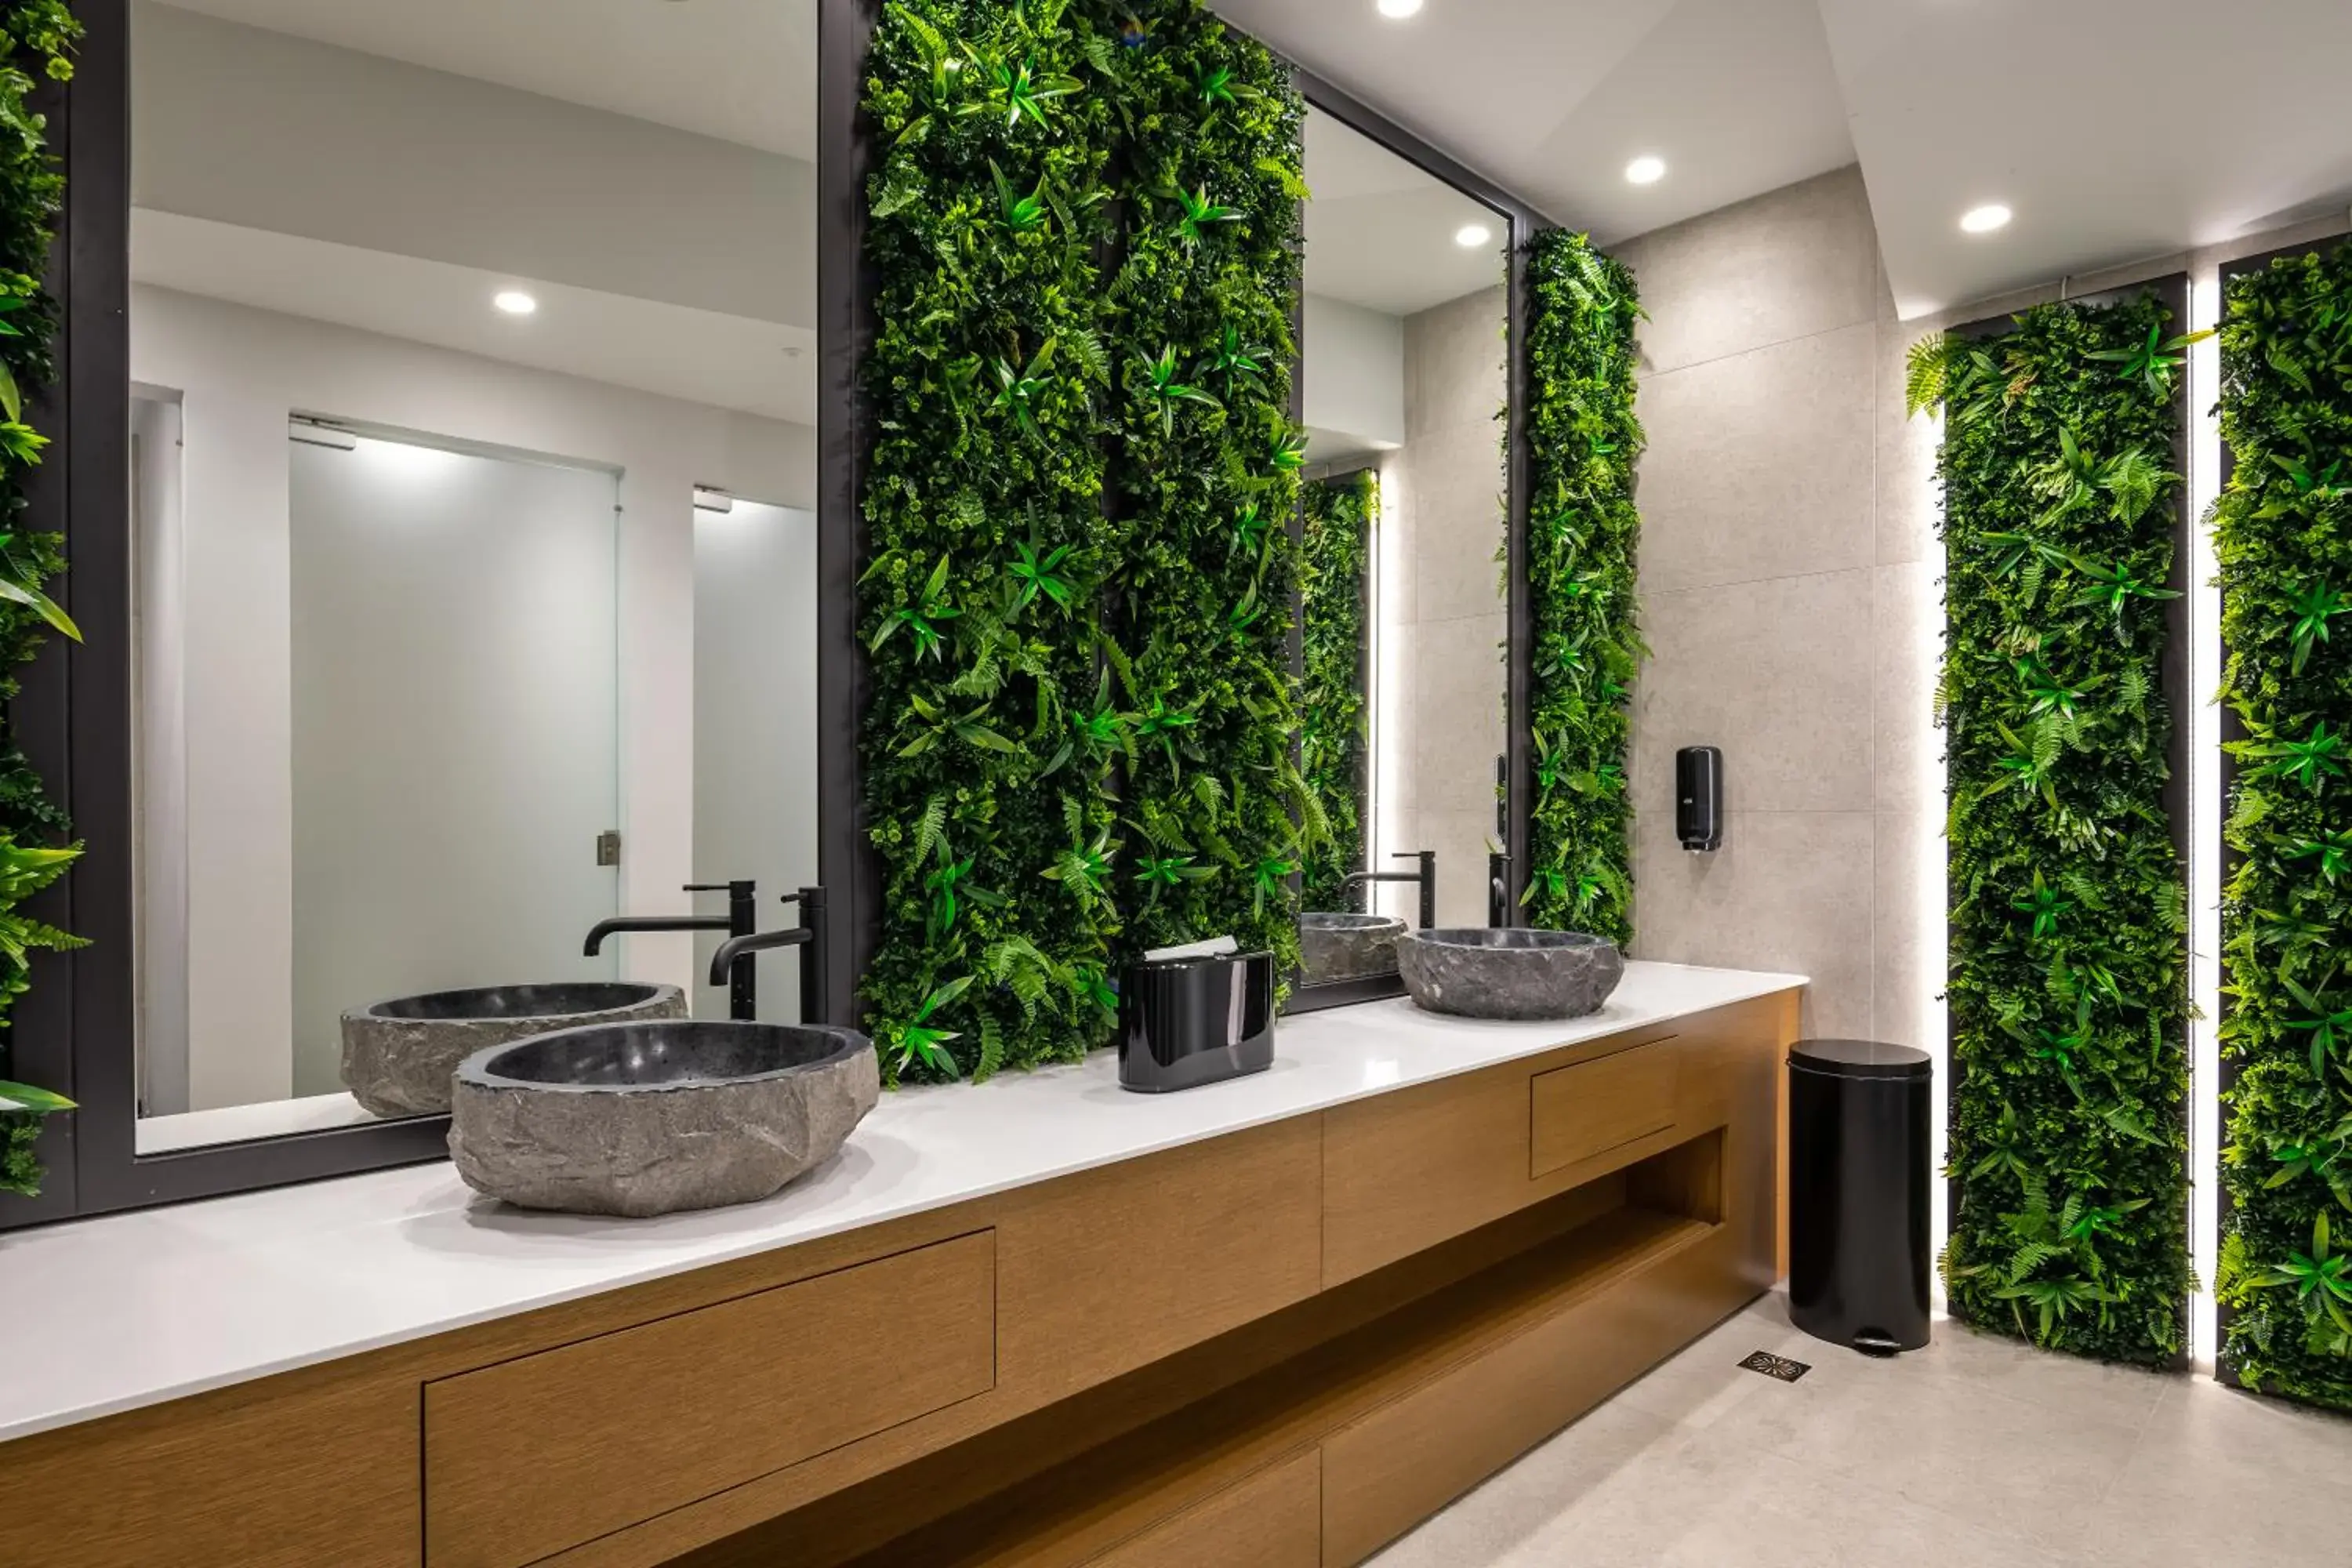 Area and facilities, Bathroom in Michelangelo Resort & Spa